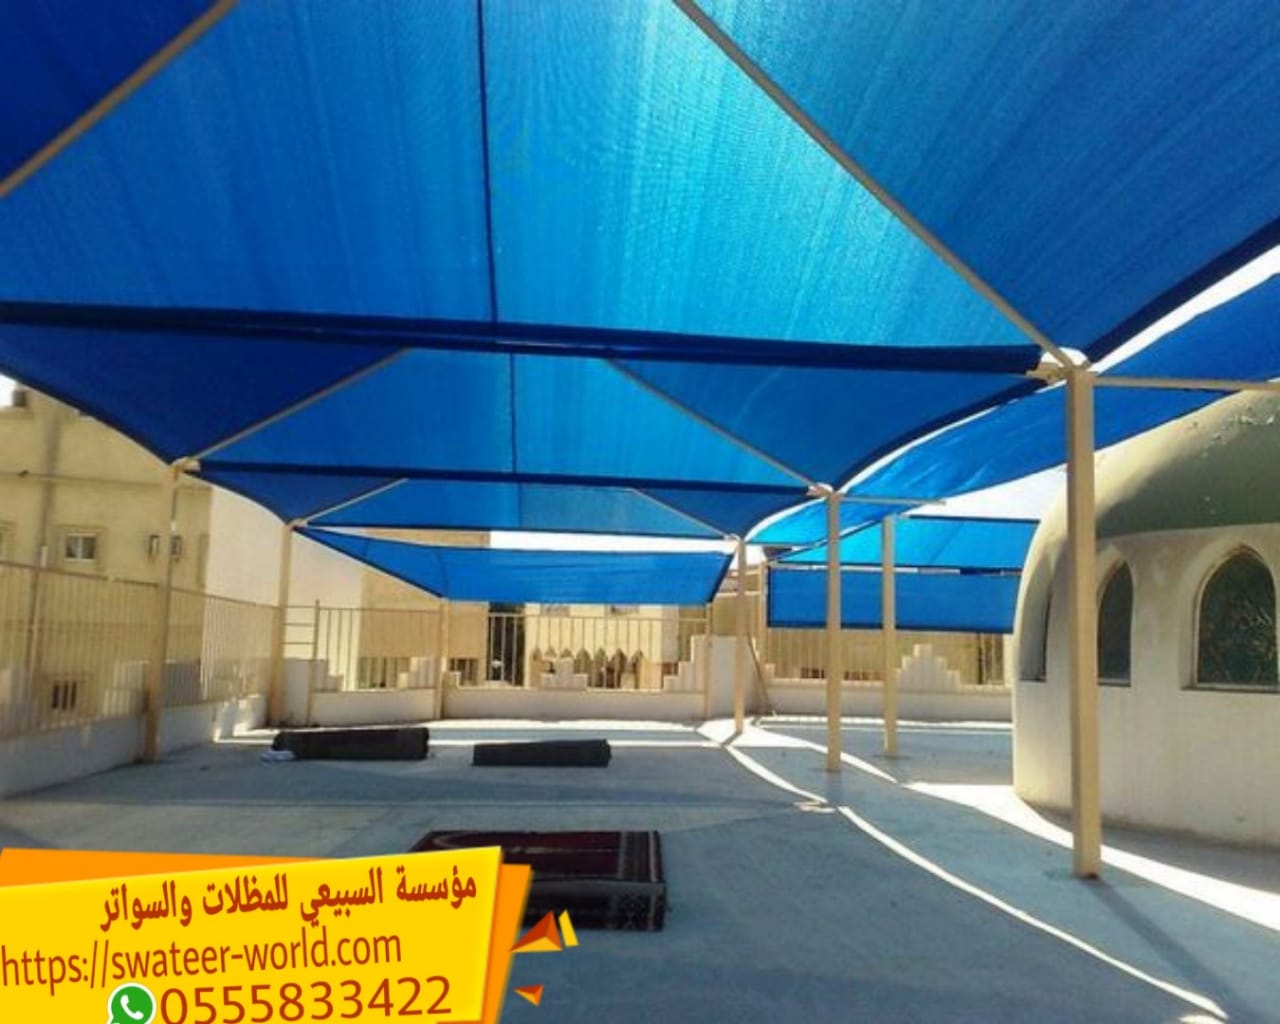 مظلات سيارات في الرياض , 0555833422 , شركة مظلات بالرياض , مظلات وسواتر الرياض بجودة عالية ,  P_1609fm98r1